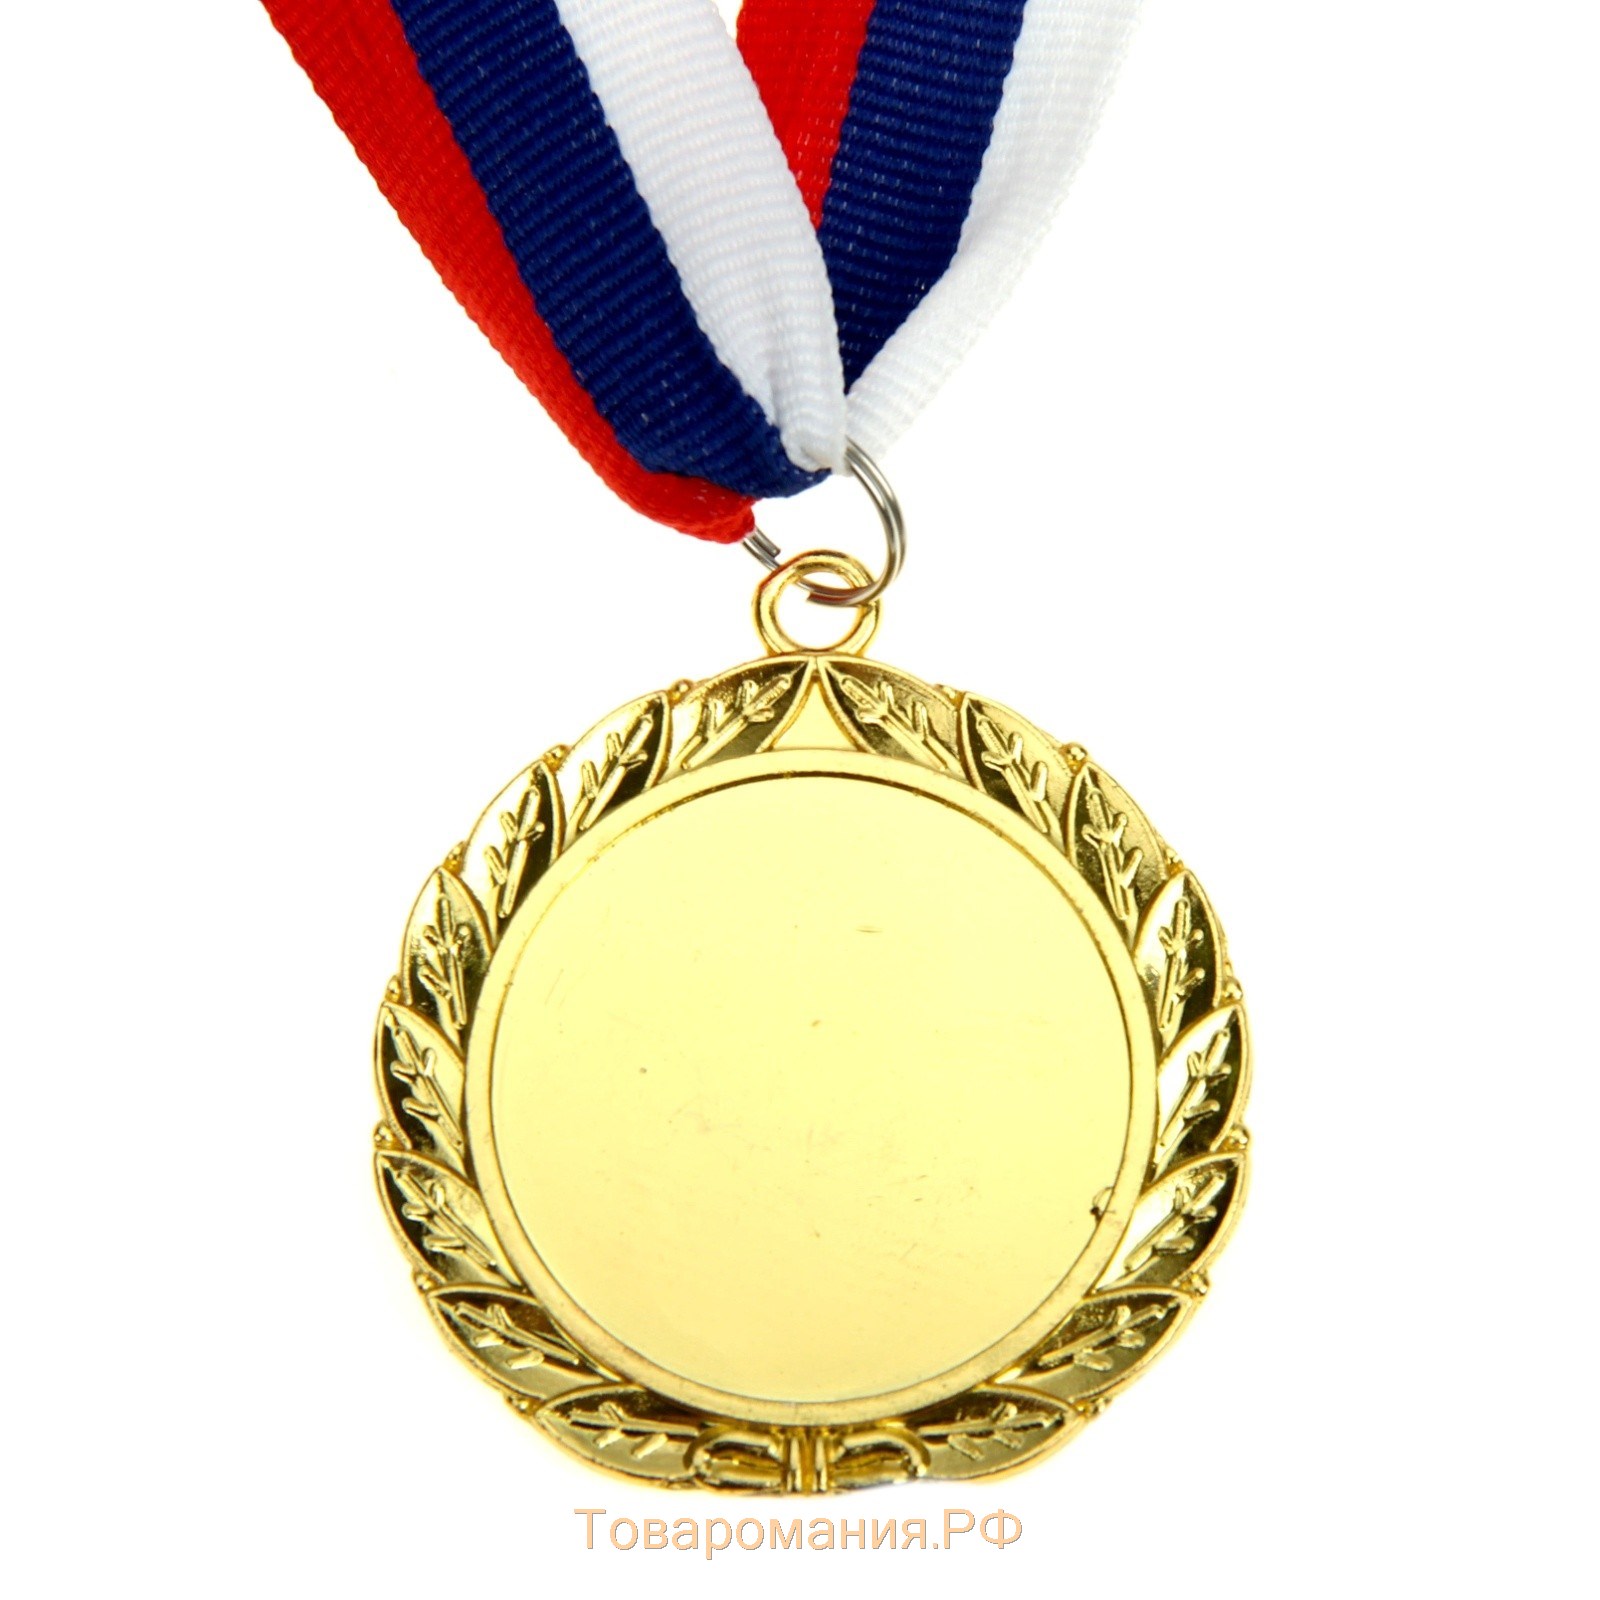 Медаль призовая 001, d= 5 см. 1 место. Цвет золото. С лентой